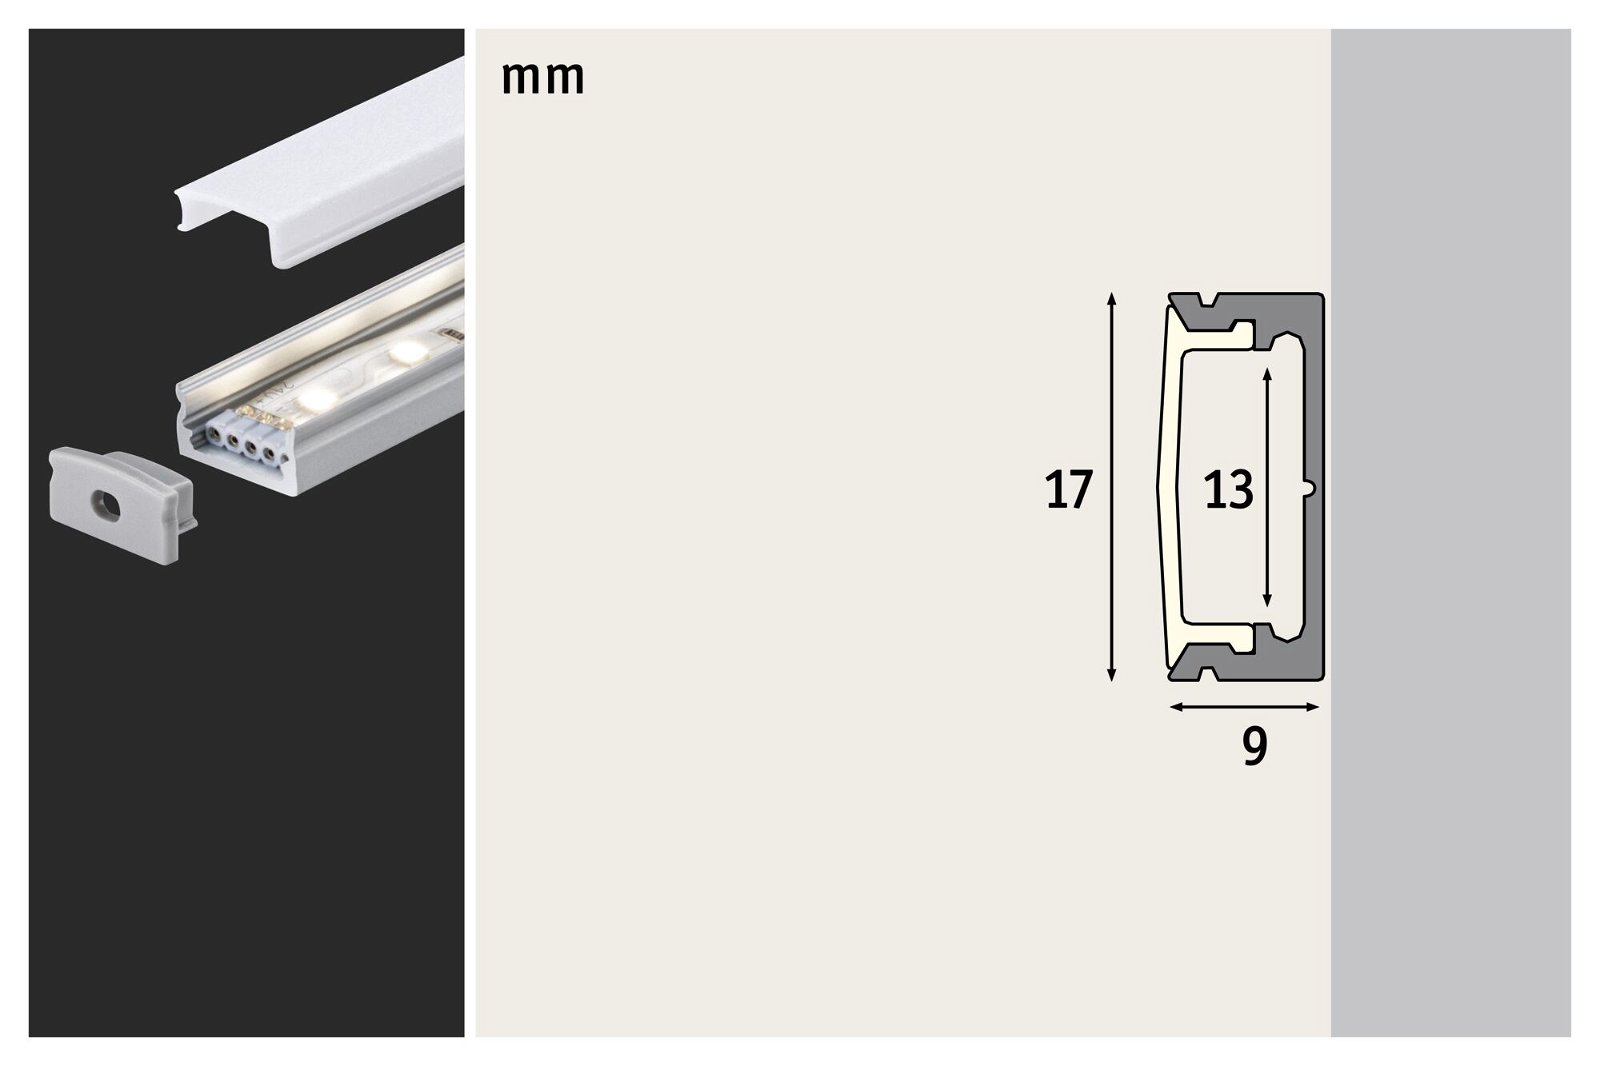 Profilé de strip LED Base Diffuseur blanc 1m Alu anodisé/Satiné